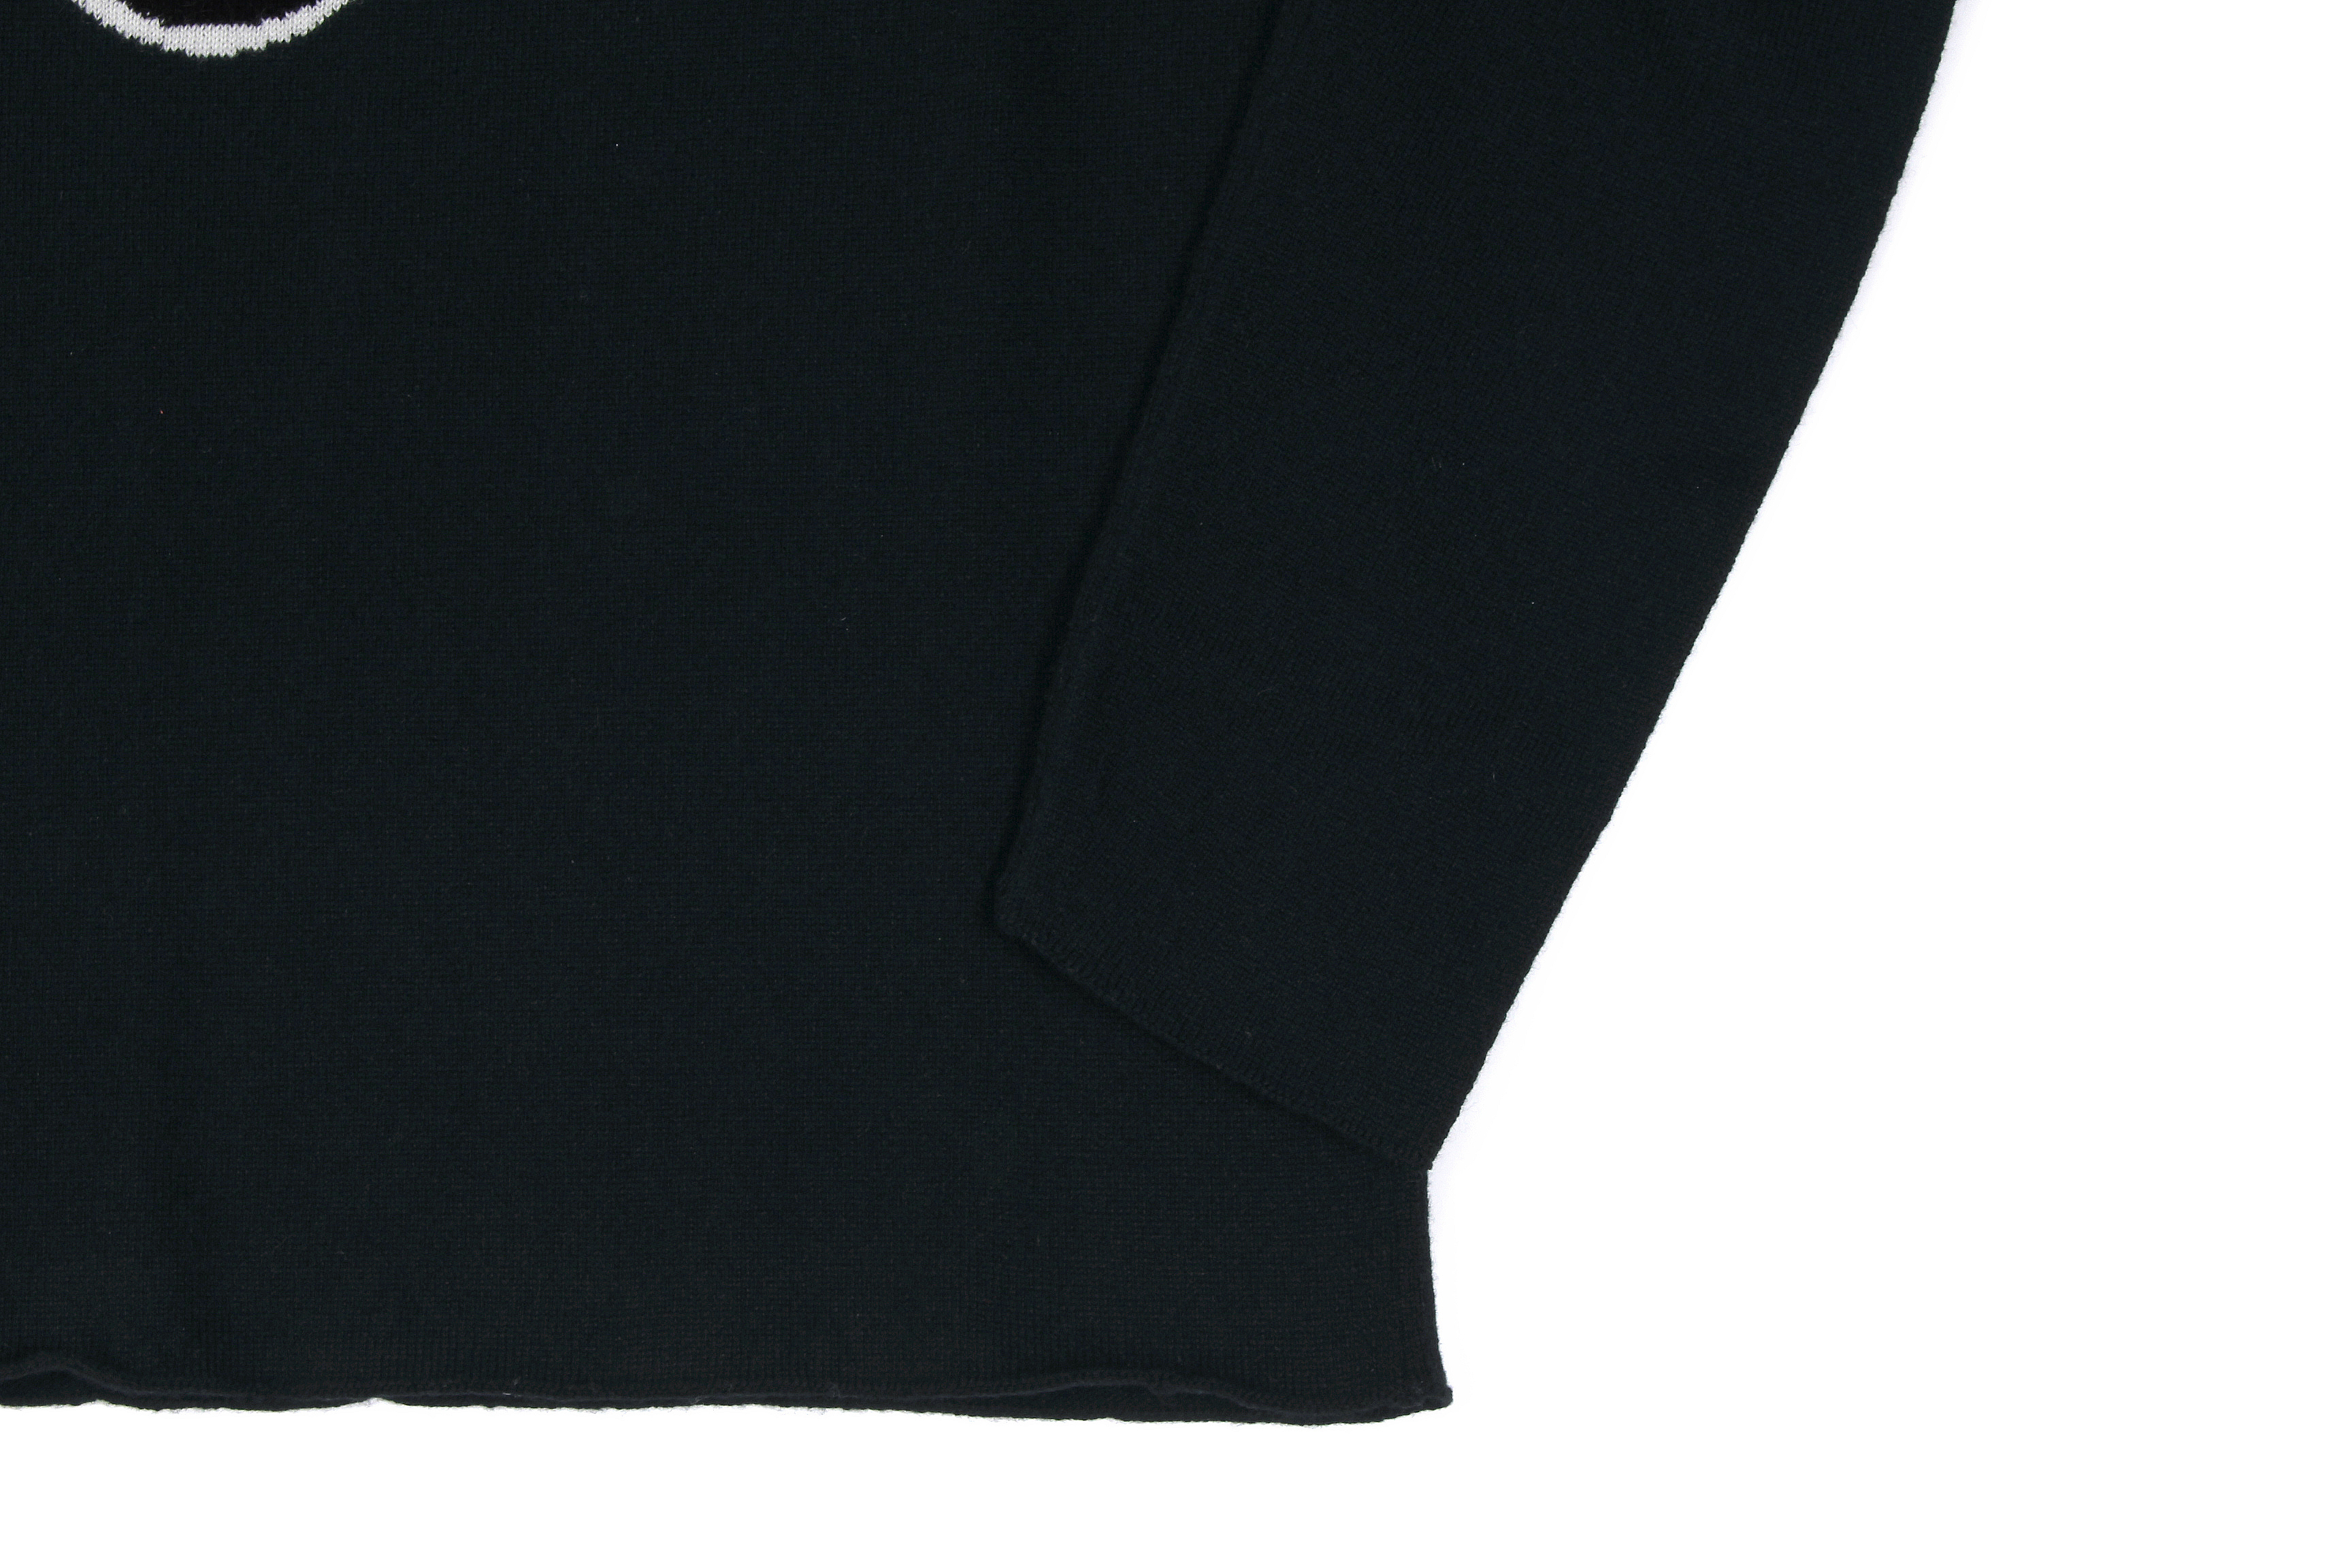 lucien pellat-finet(ルシアン ペラフィネ) Skull Camera Cashmere Sweater (スカル カメラ カシミア セーター) インターシャ カシミア スカル セーター BLACK × NIVEOUS (ブラック × ホワイト) made in scotland (スコットランド製) 2020 春夏新作 愛知 名古屋 altoediritto アルトエデリット